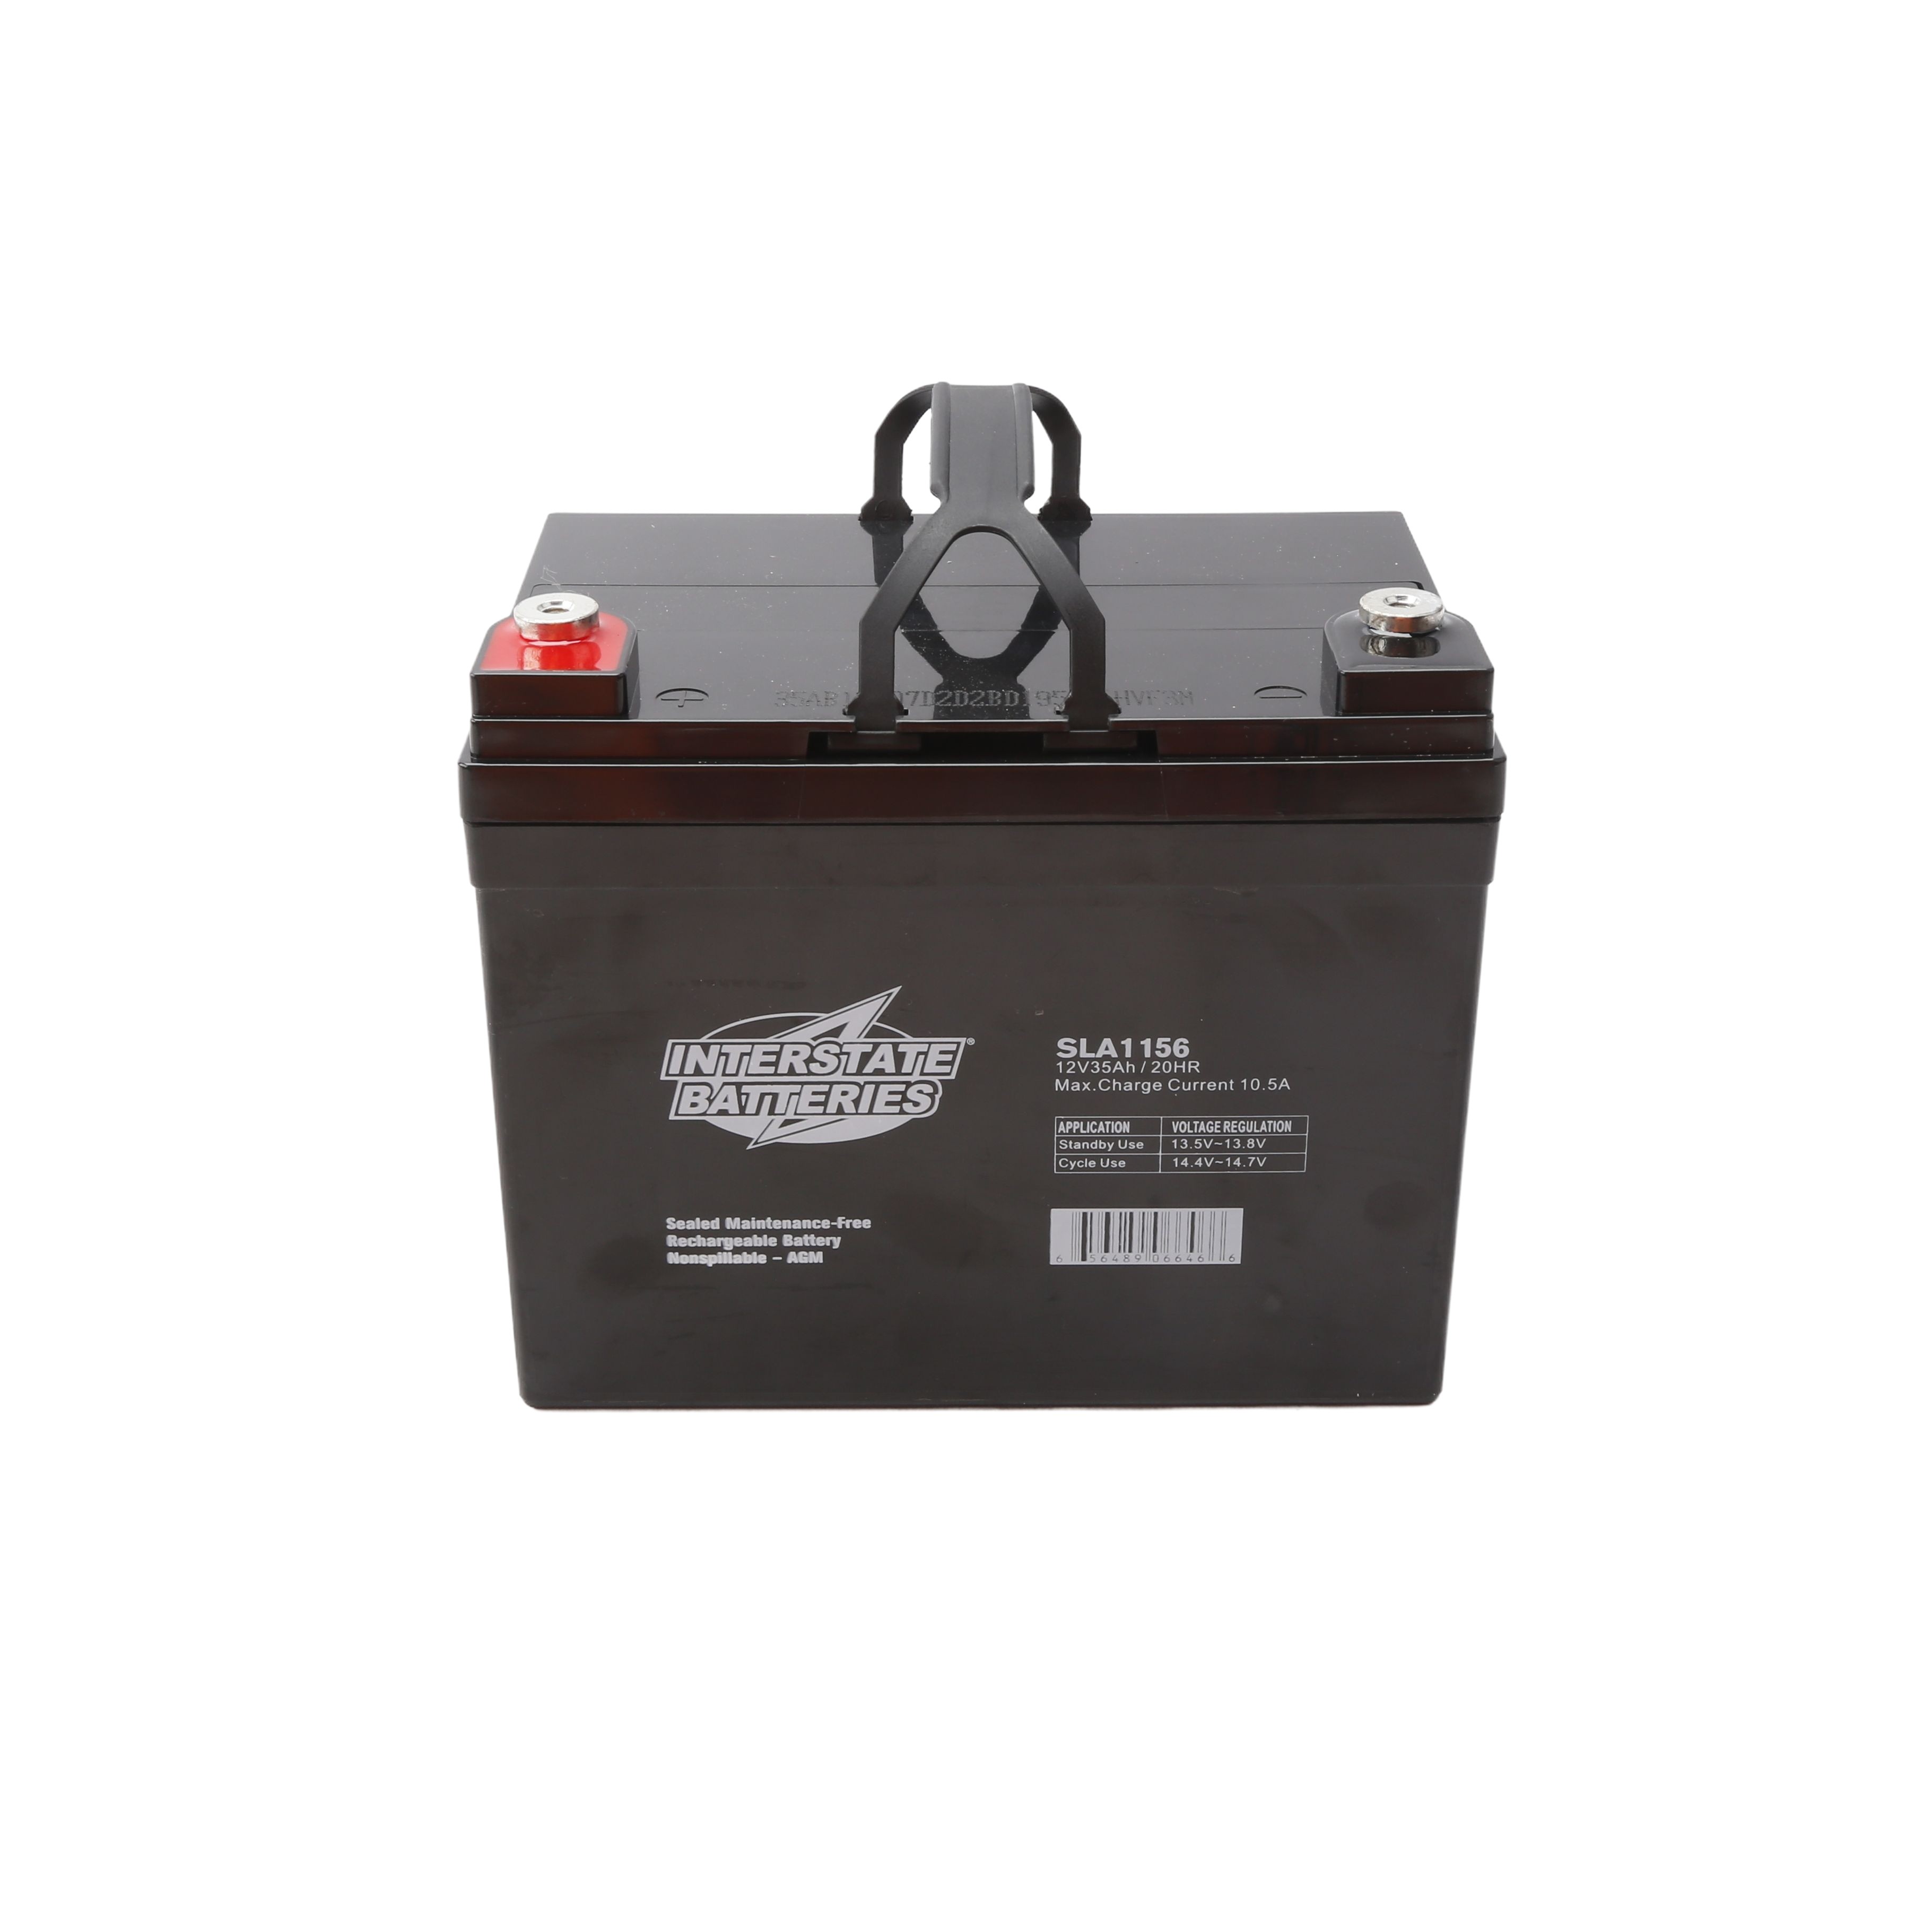 NRG AGM Autobatterie 70Ah 12V, 106,90 €